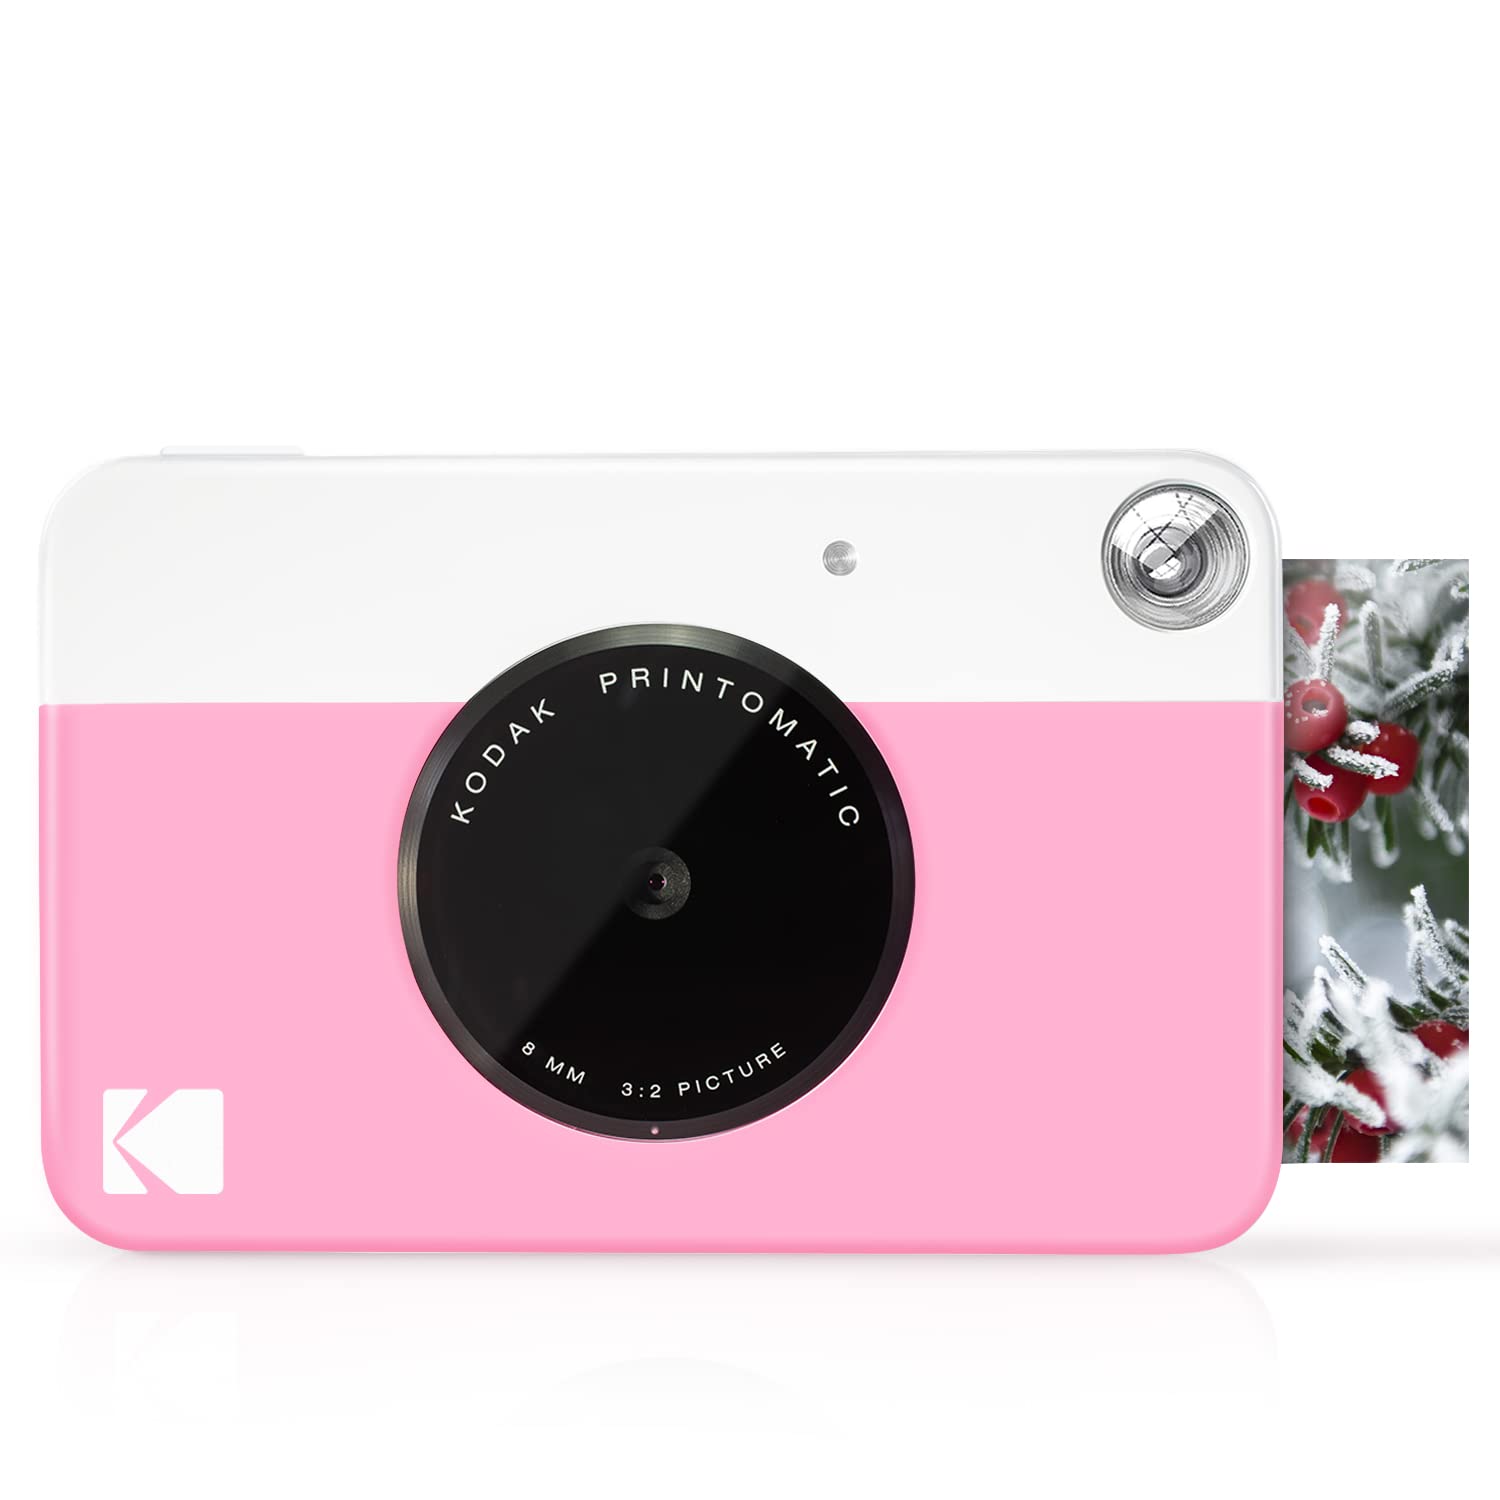 Kodak Printomatic Digital Instant Print Camera (Black) & Printomatic Digital Instant Print Camera (Pink) Print Memories Instantly & 2